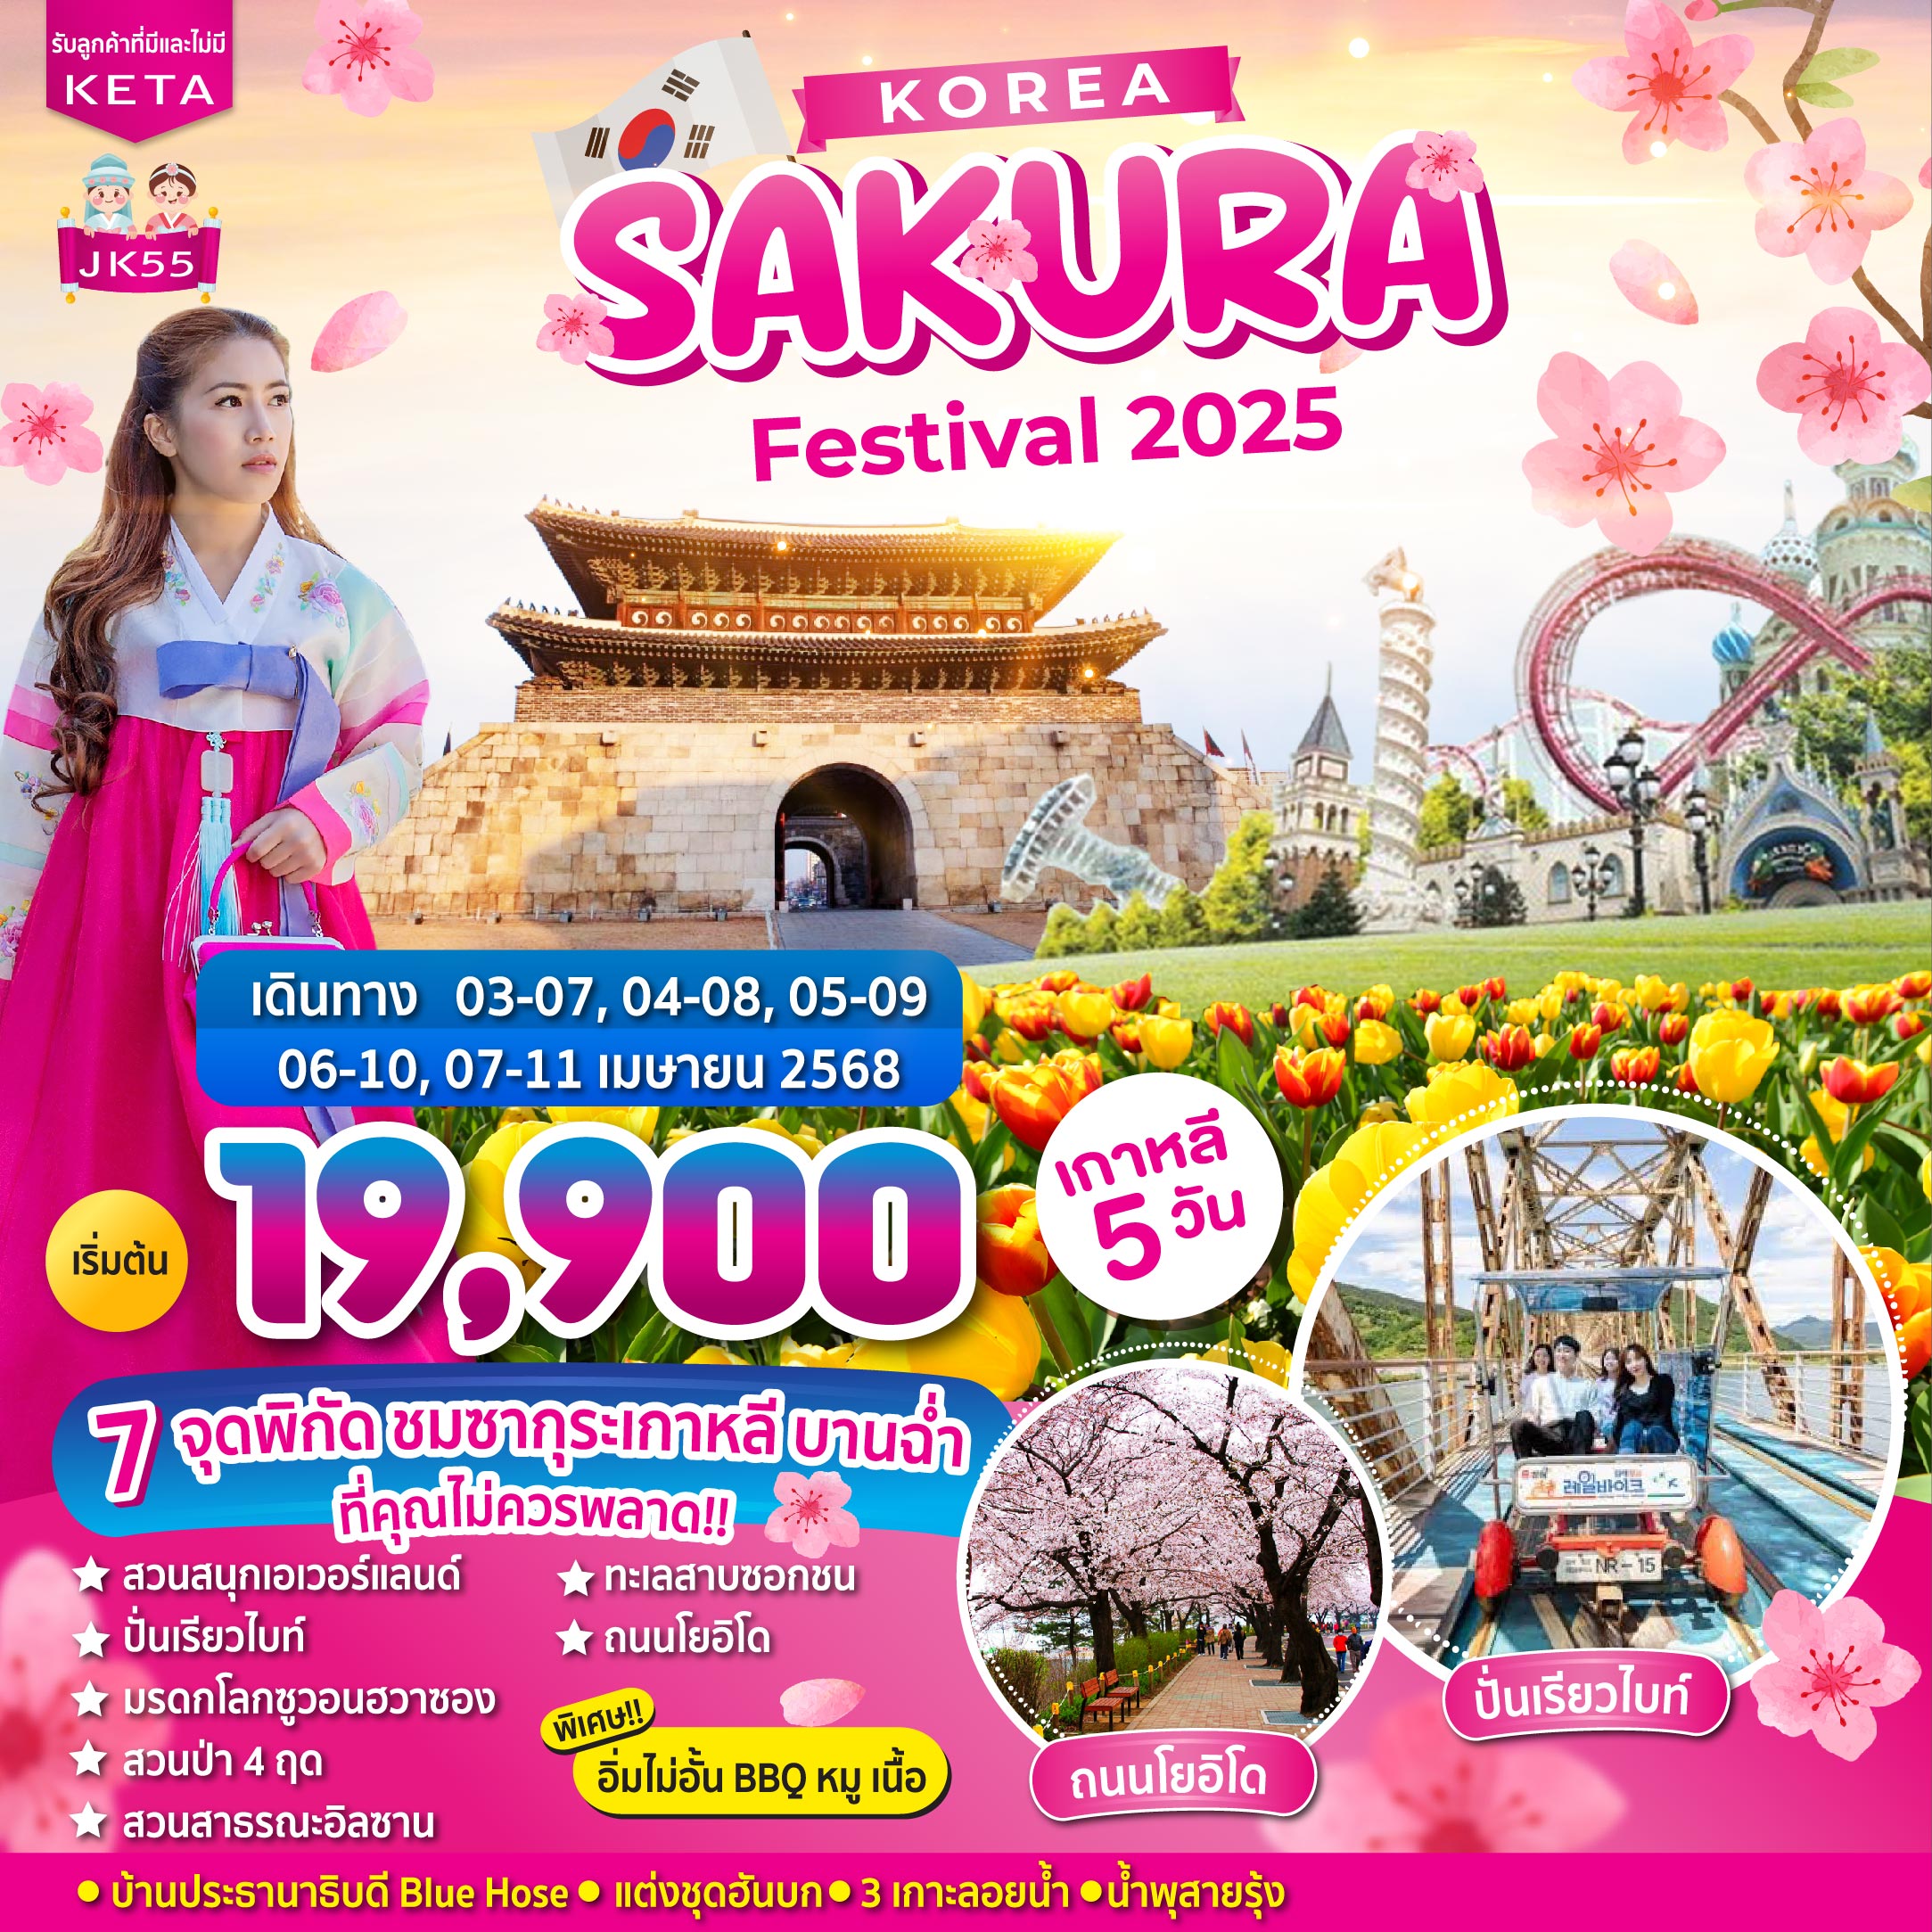 ทัวร์เกาหลี Korea Sakura Festival 2025 5วัน 3คืน (7C)